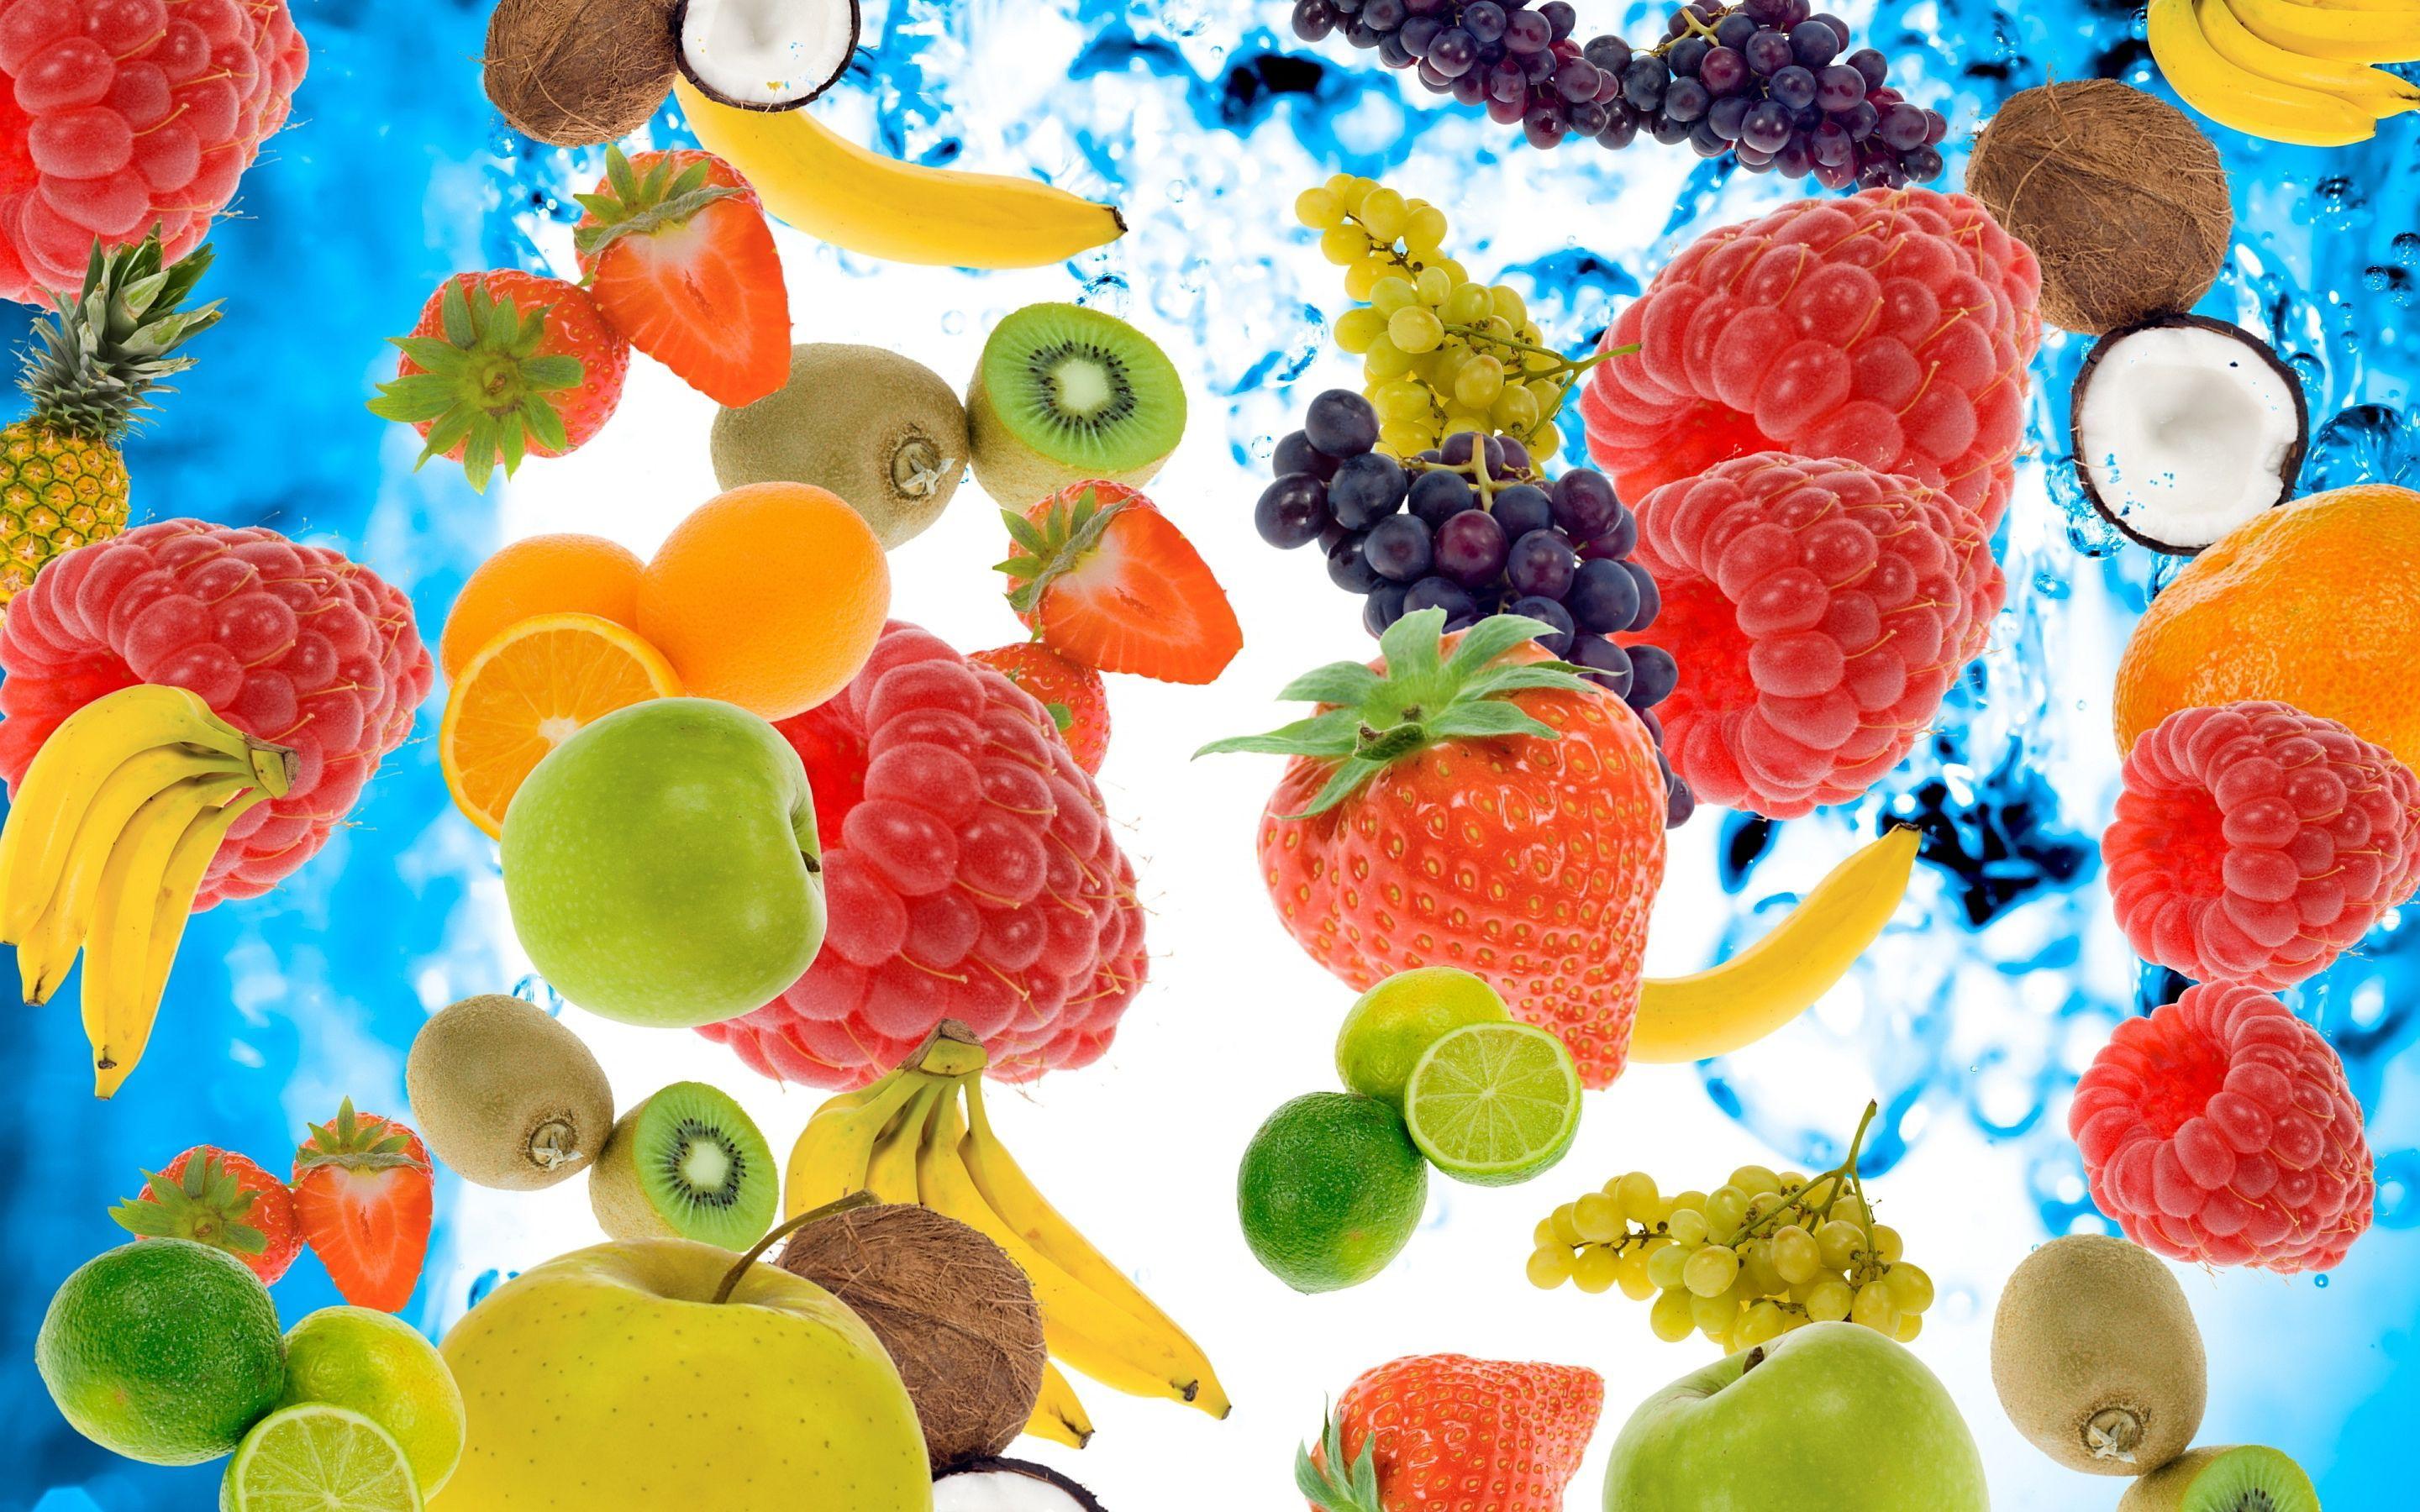 Fruit wallpaper. Fruit wallpaper, Fruit infused water, Fruits image